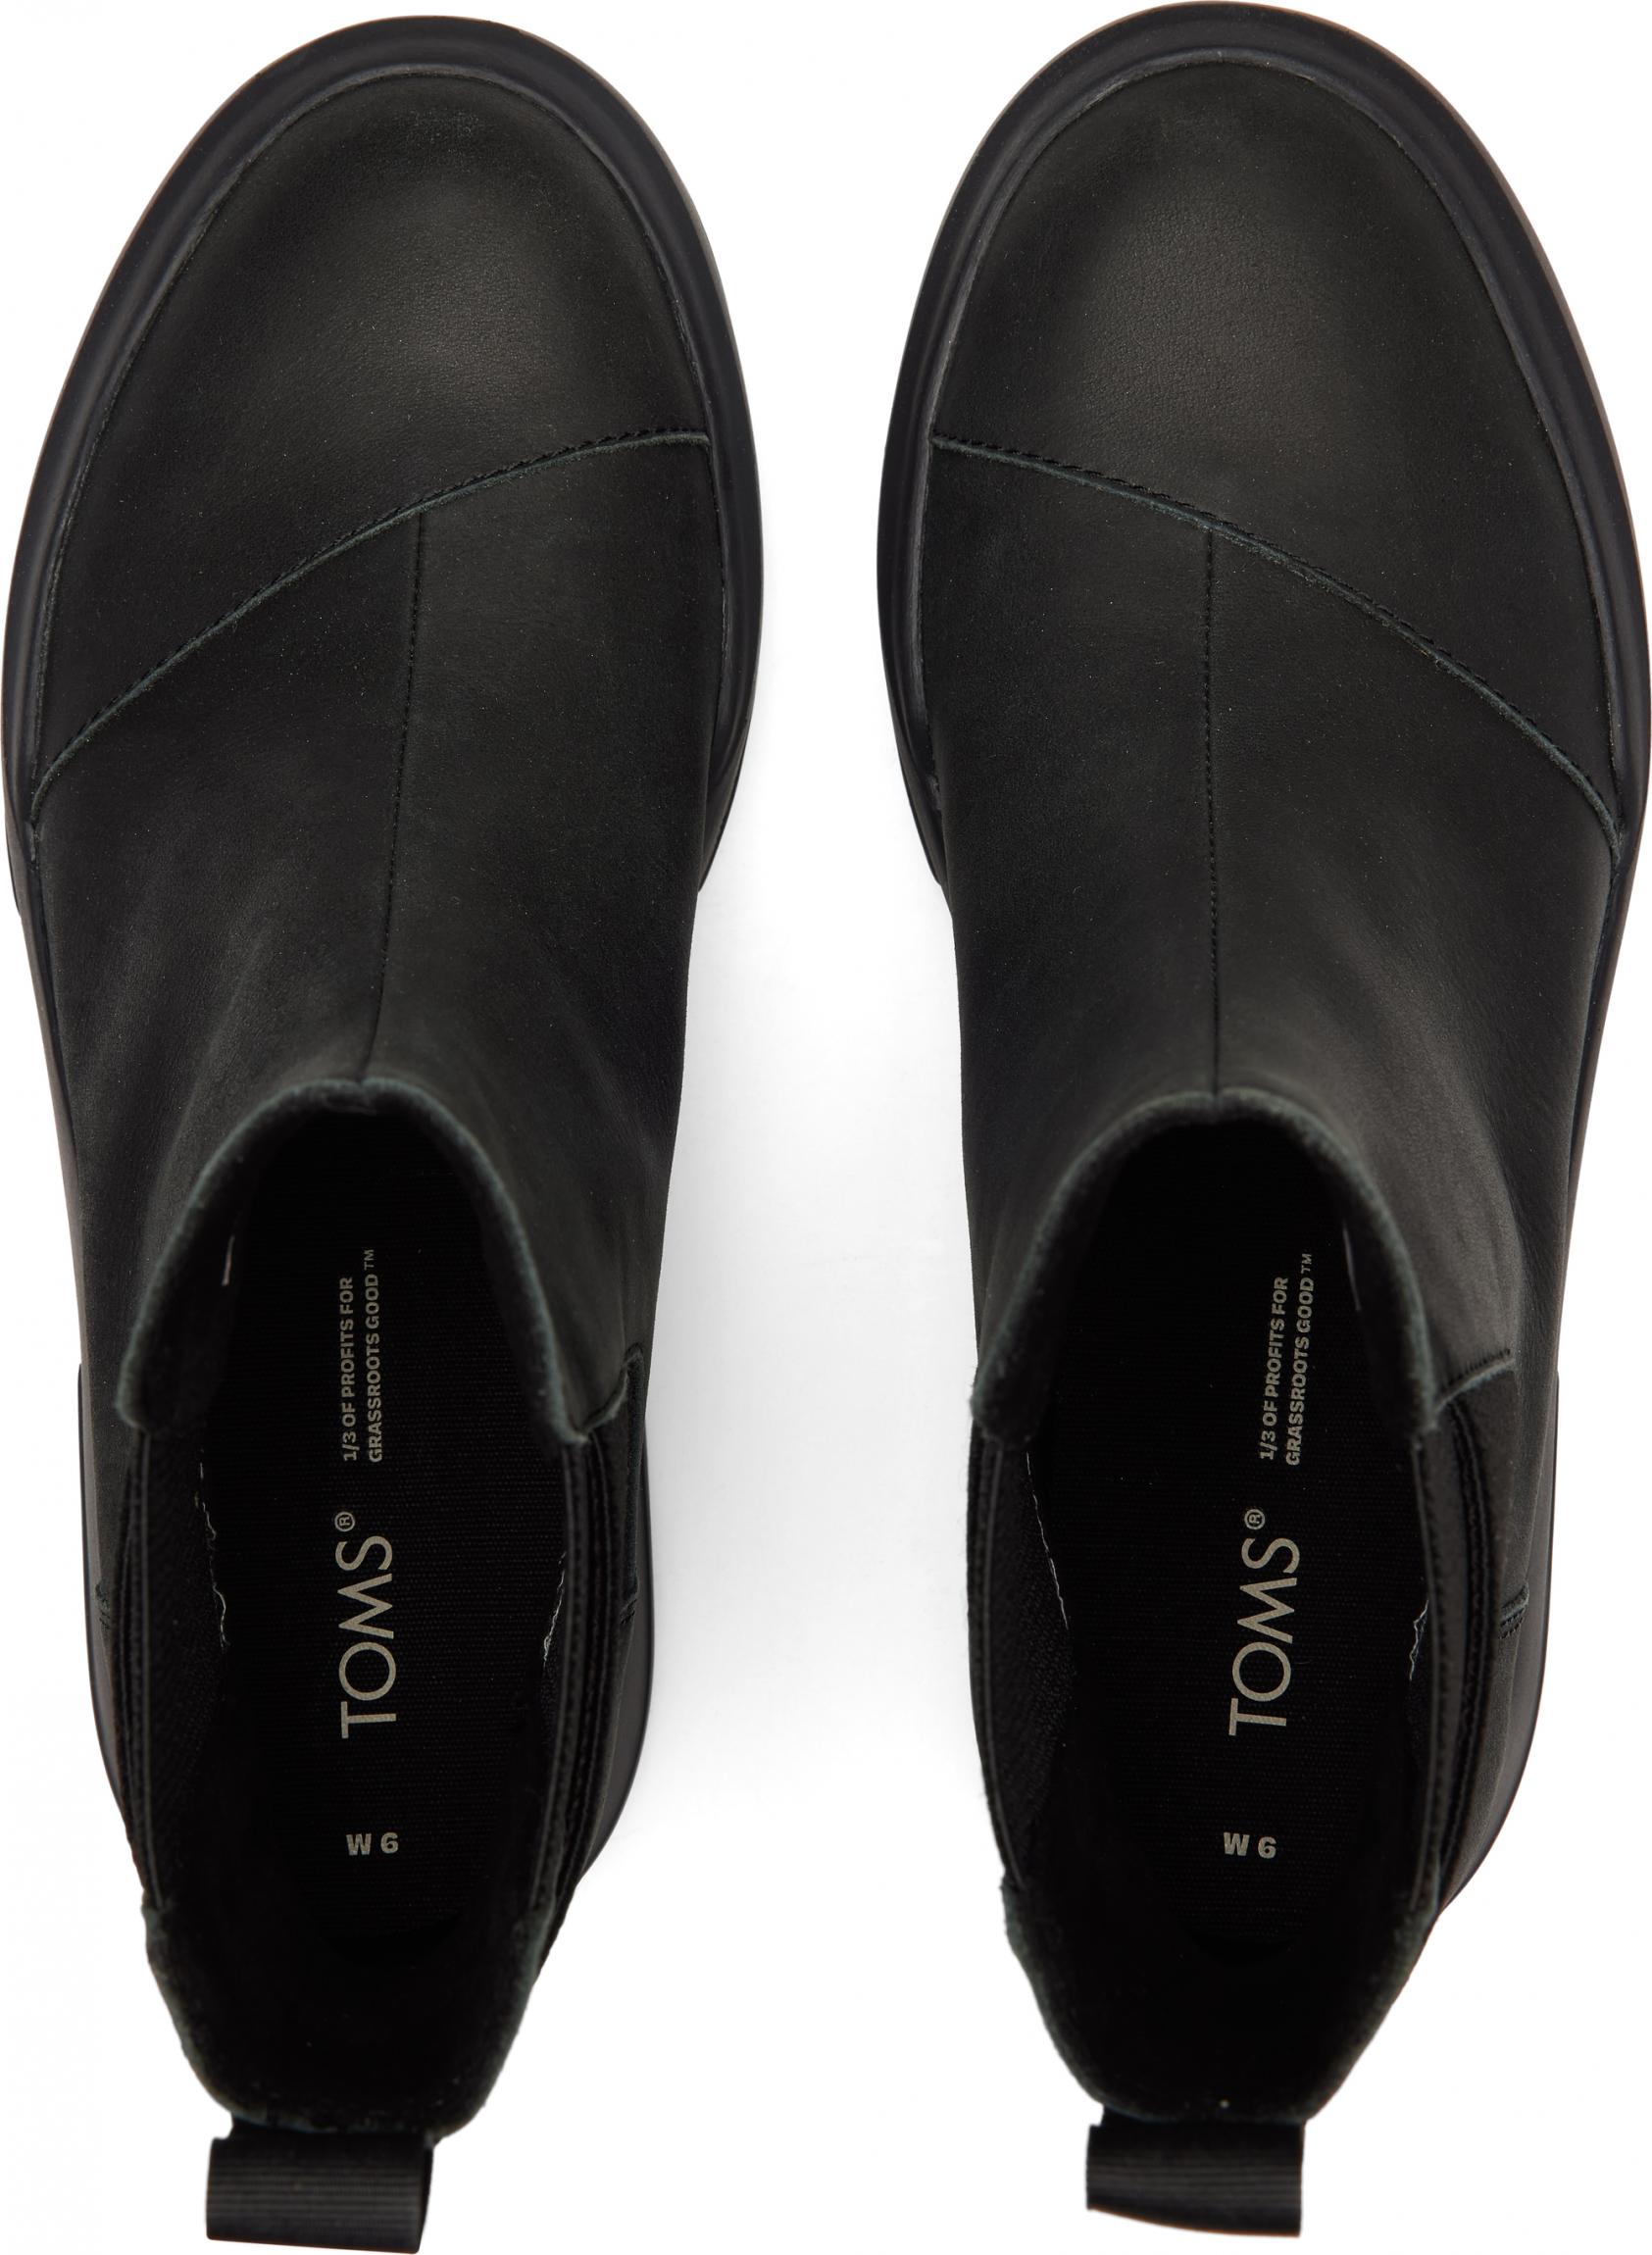 Dámske čierne kožené topánky TOMS Alpargata Combat